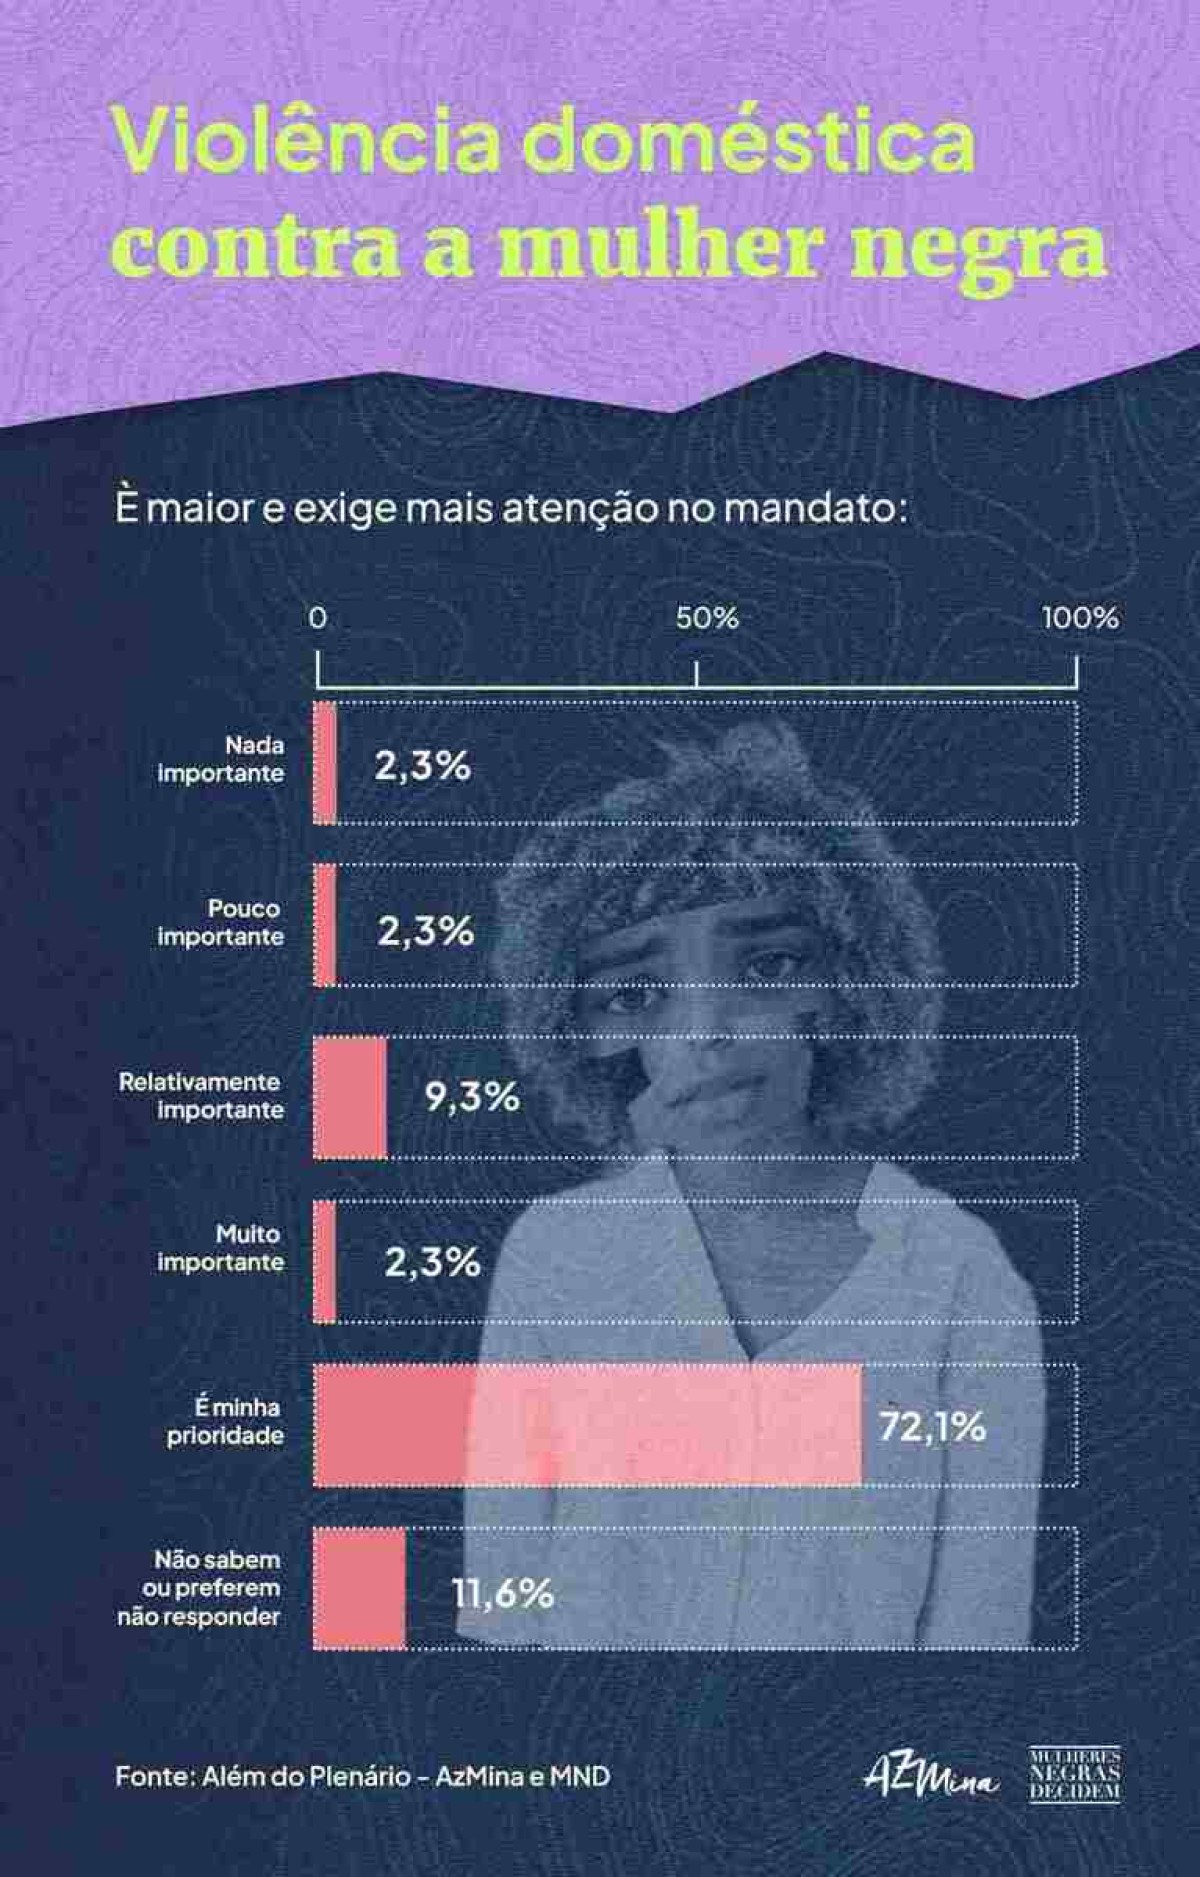 Gráfico que mostra qual a prioridade de pautas referentes à violência doméstica contra a mulher no mandato dos entrevistados no Congresso Nacional